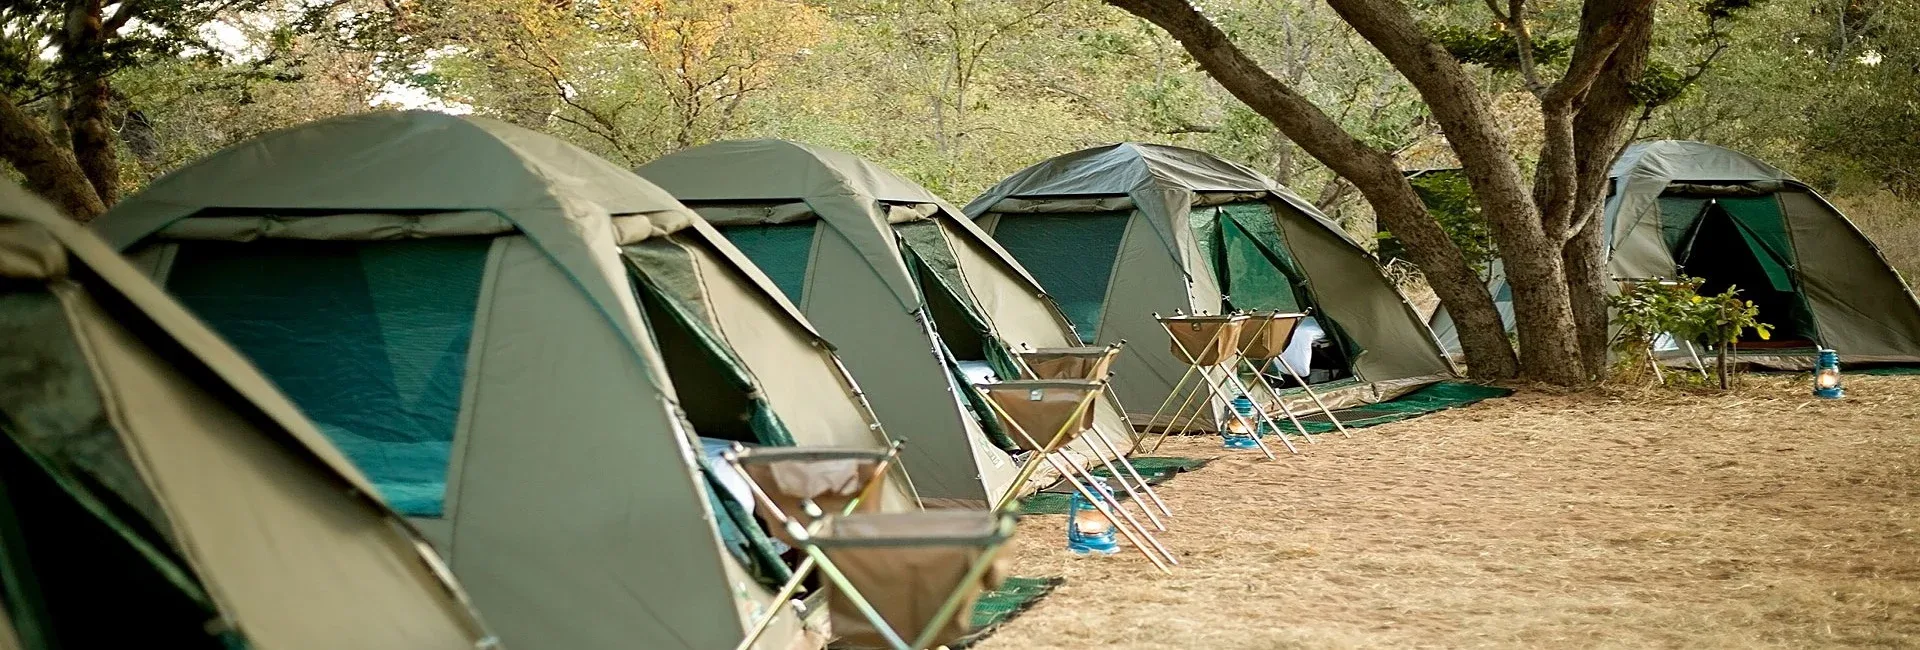 3 days chobe camping safari banner